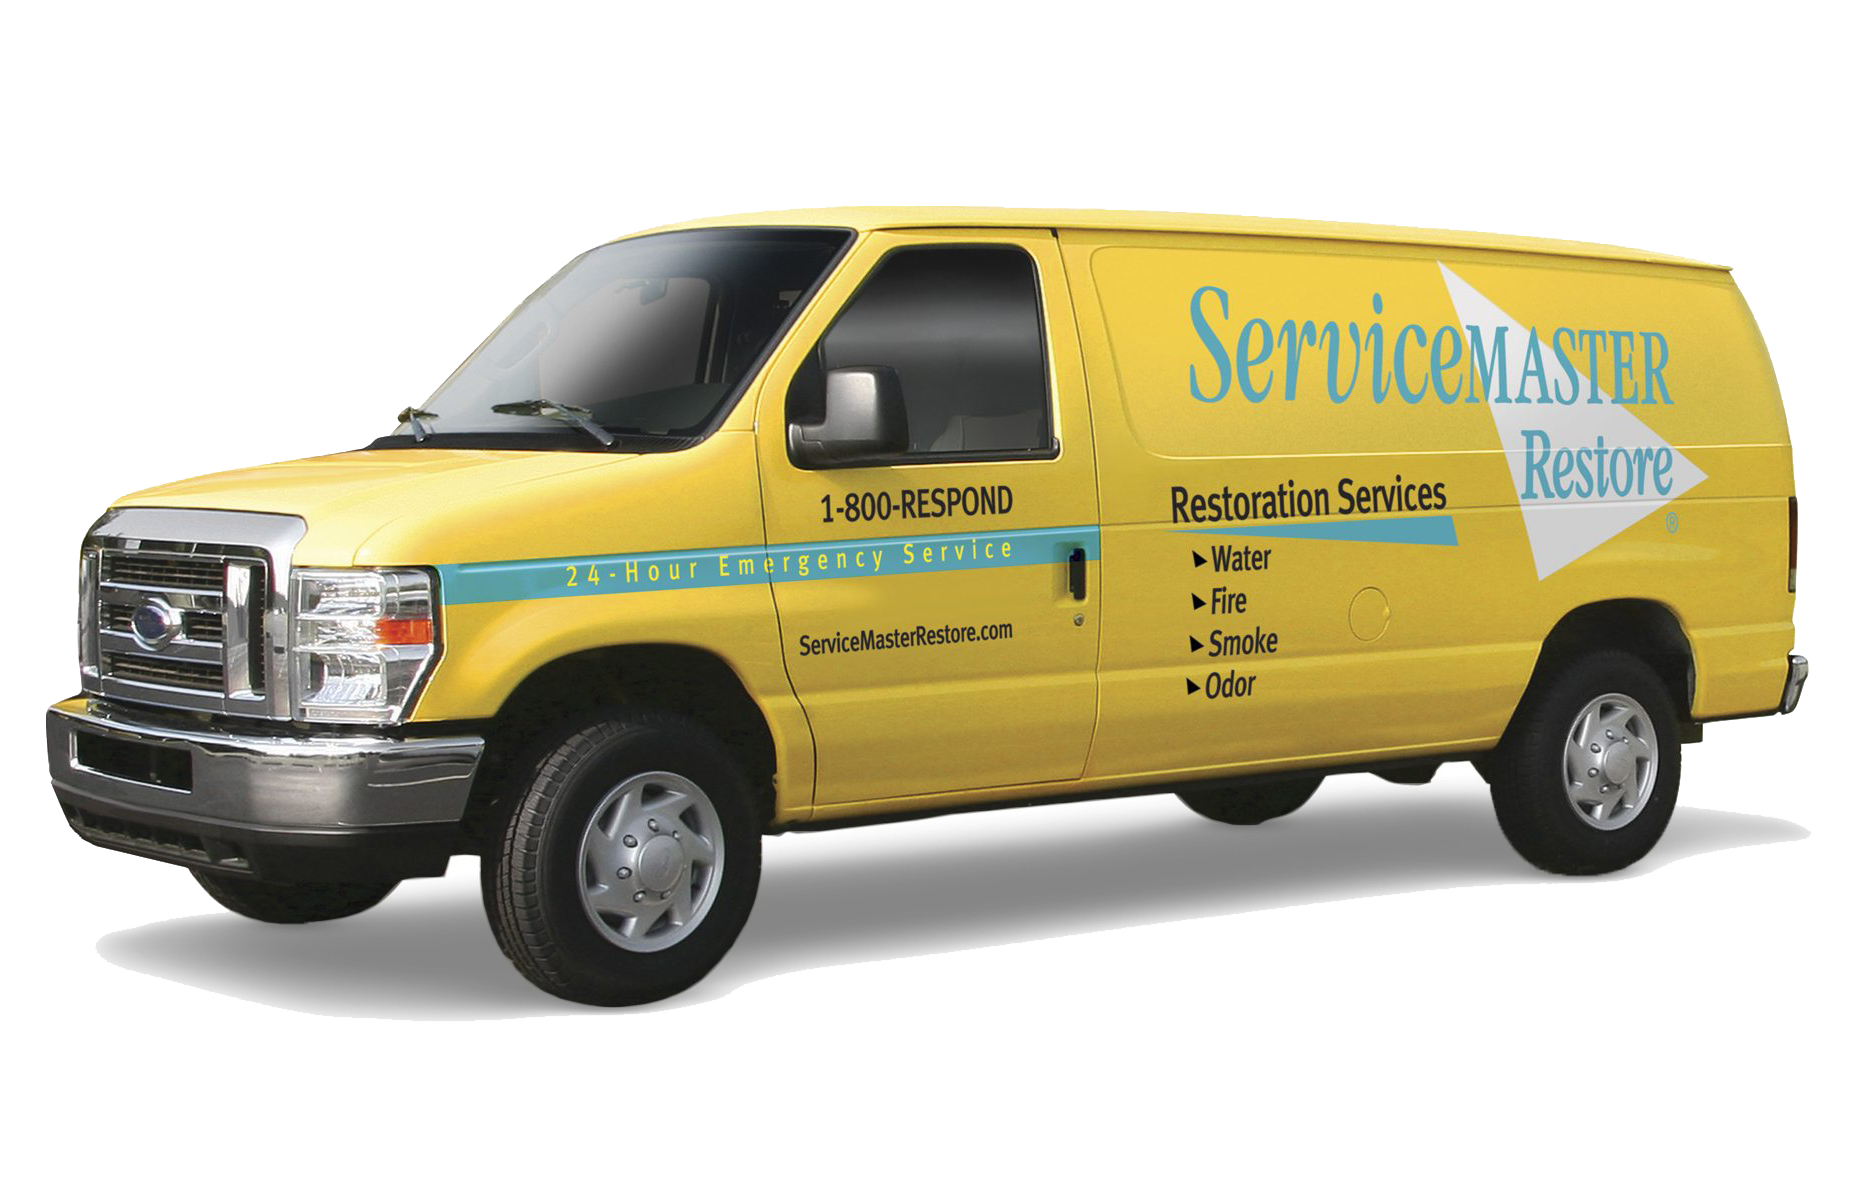 servicemaster restore van